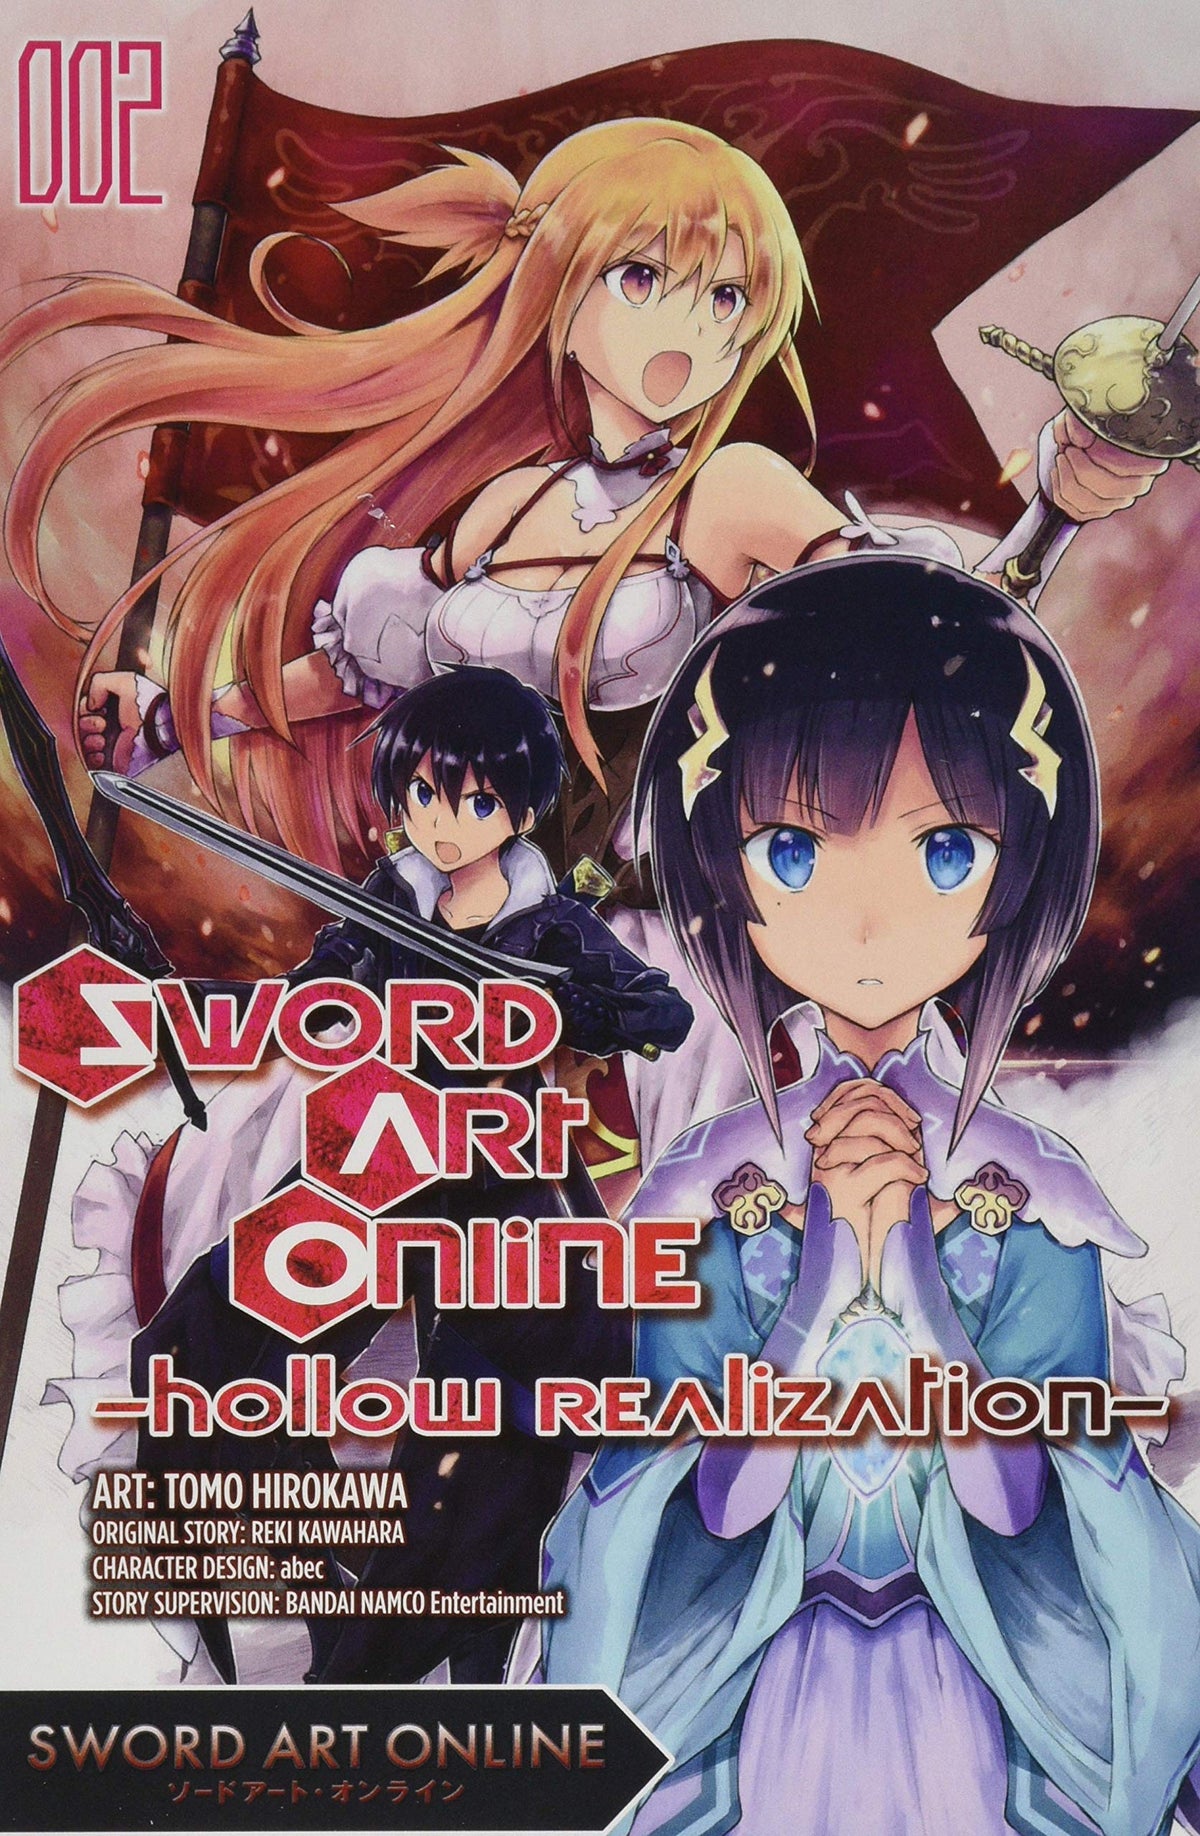 Sword Art Online: Hollow Realization Vol. 2 - Third Eye